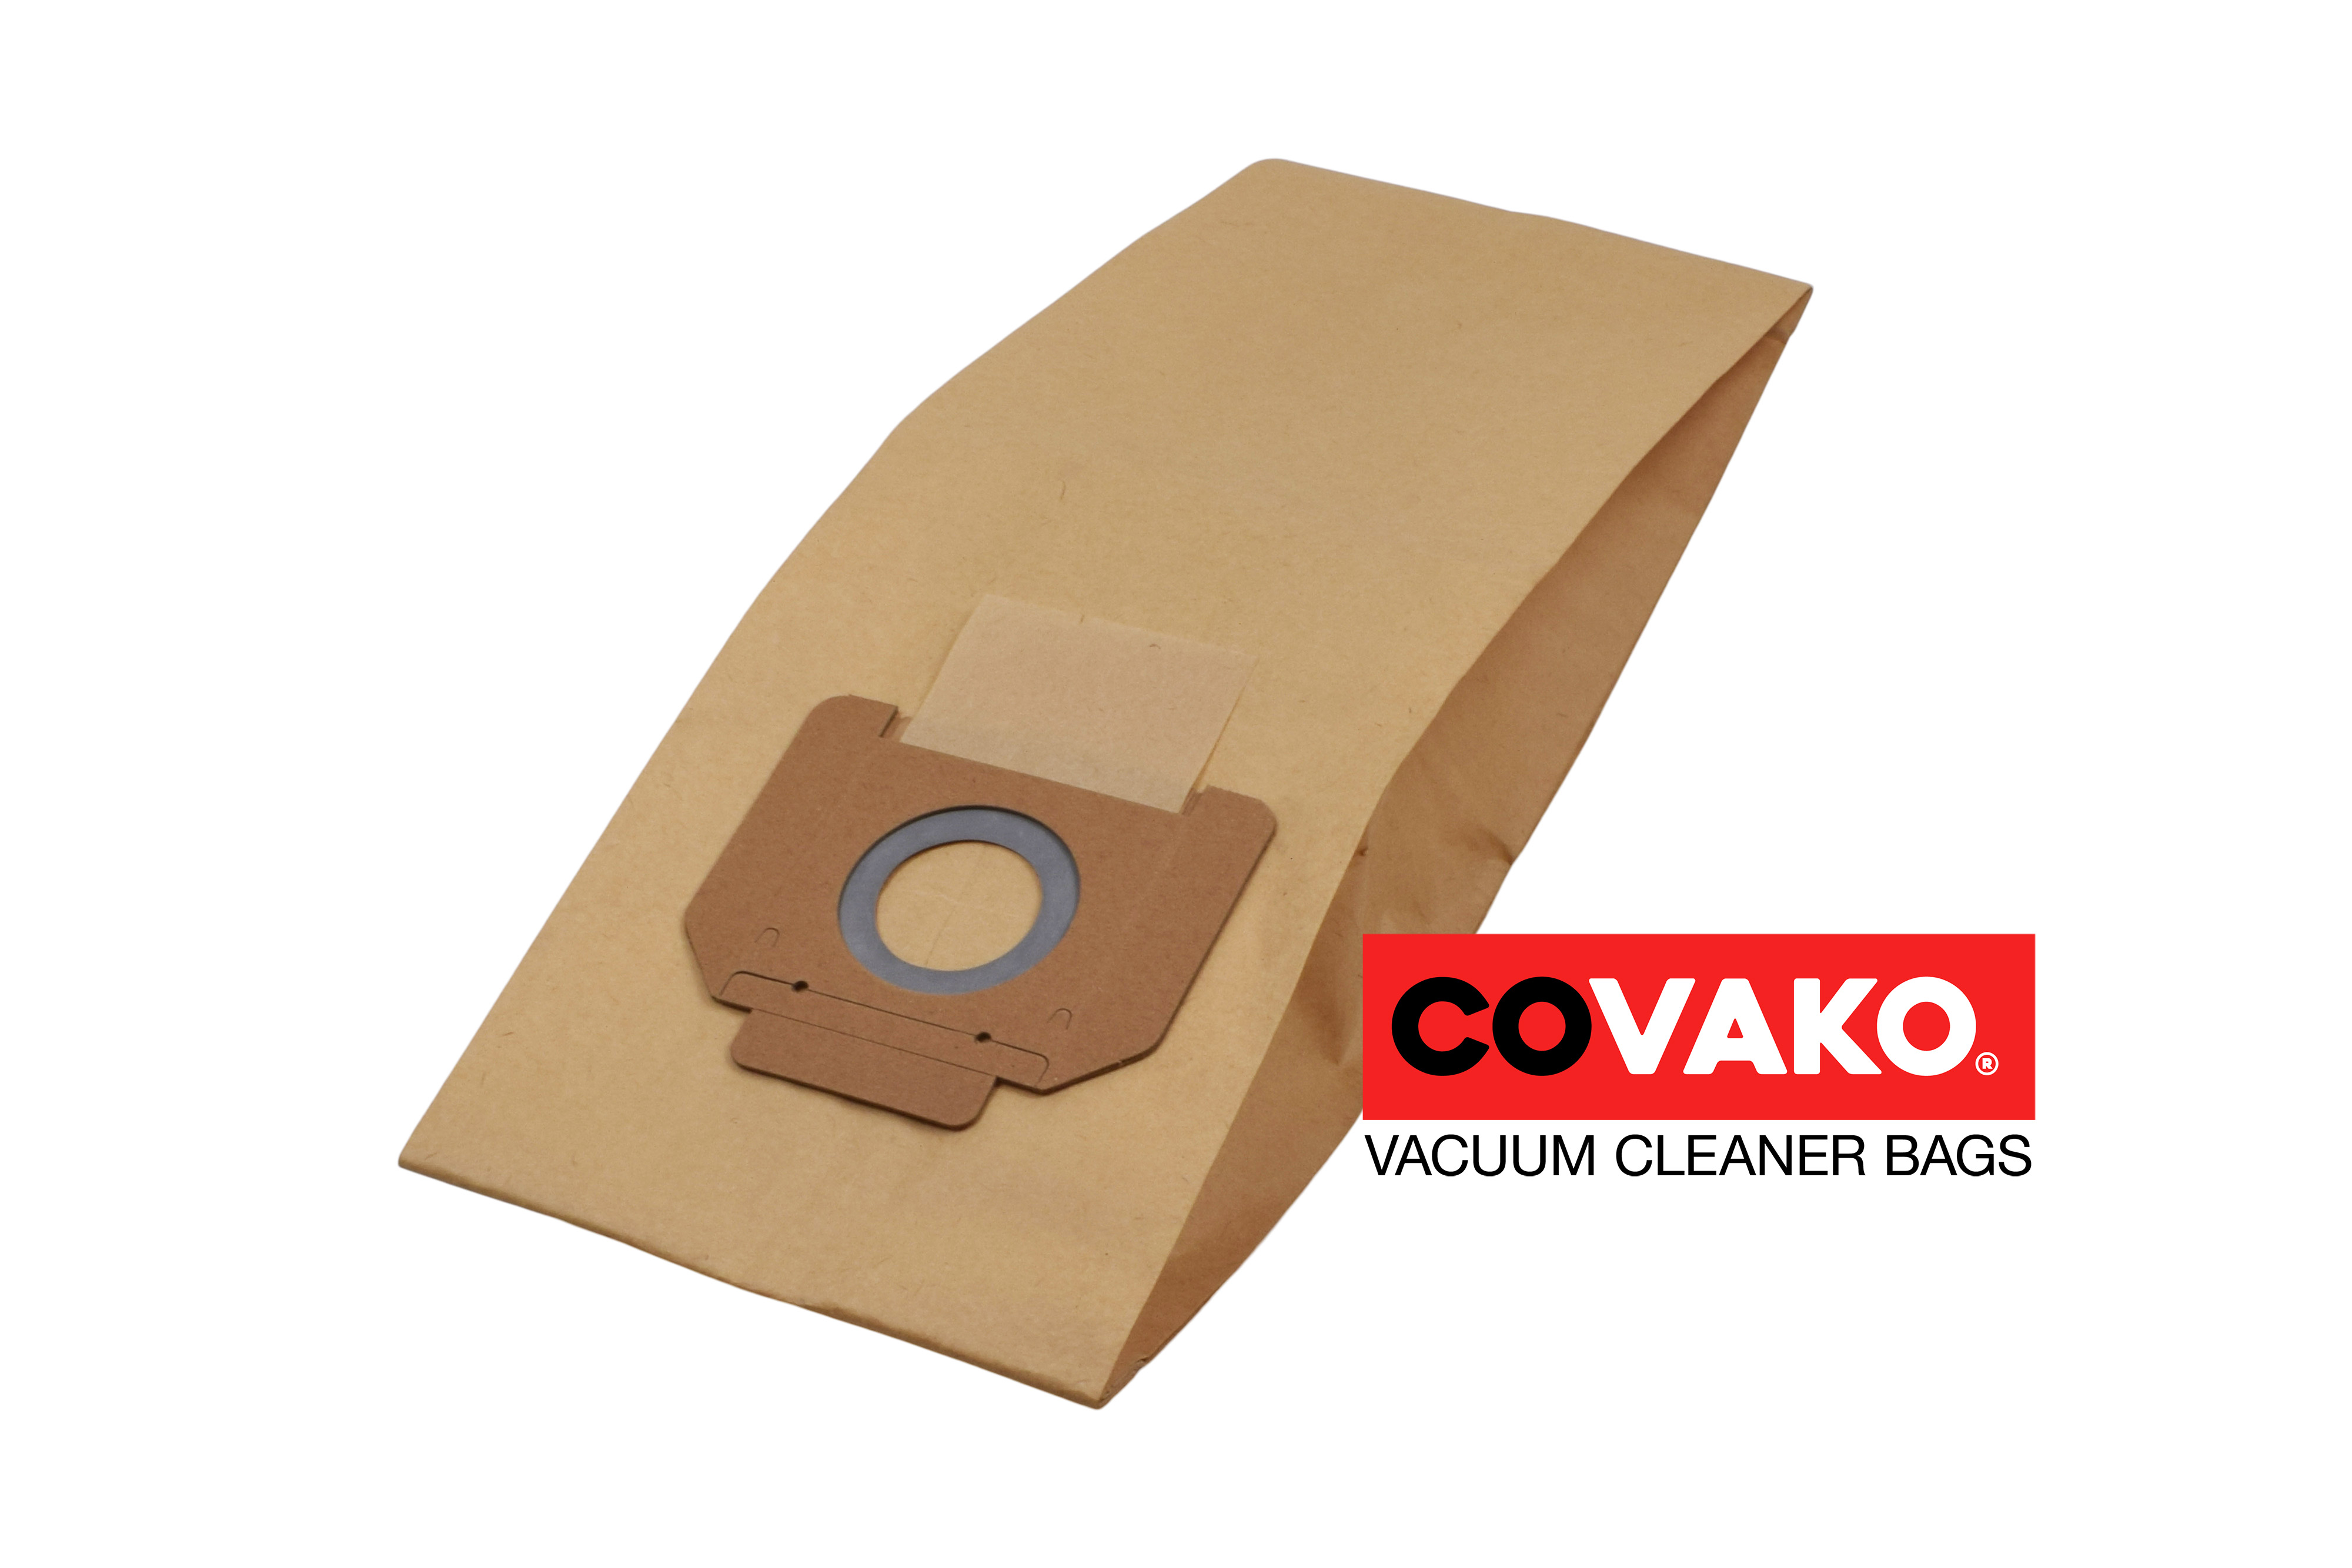 Kärcher A 2801 plus / Paper - Kärcher vacuum cleaner bags